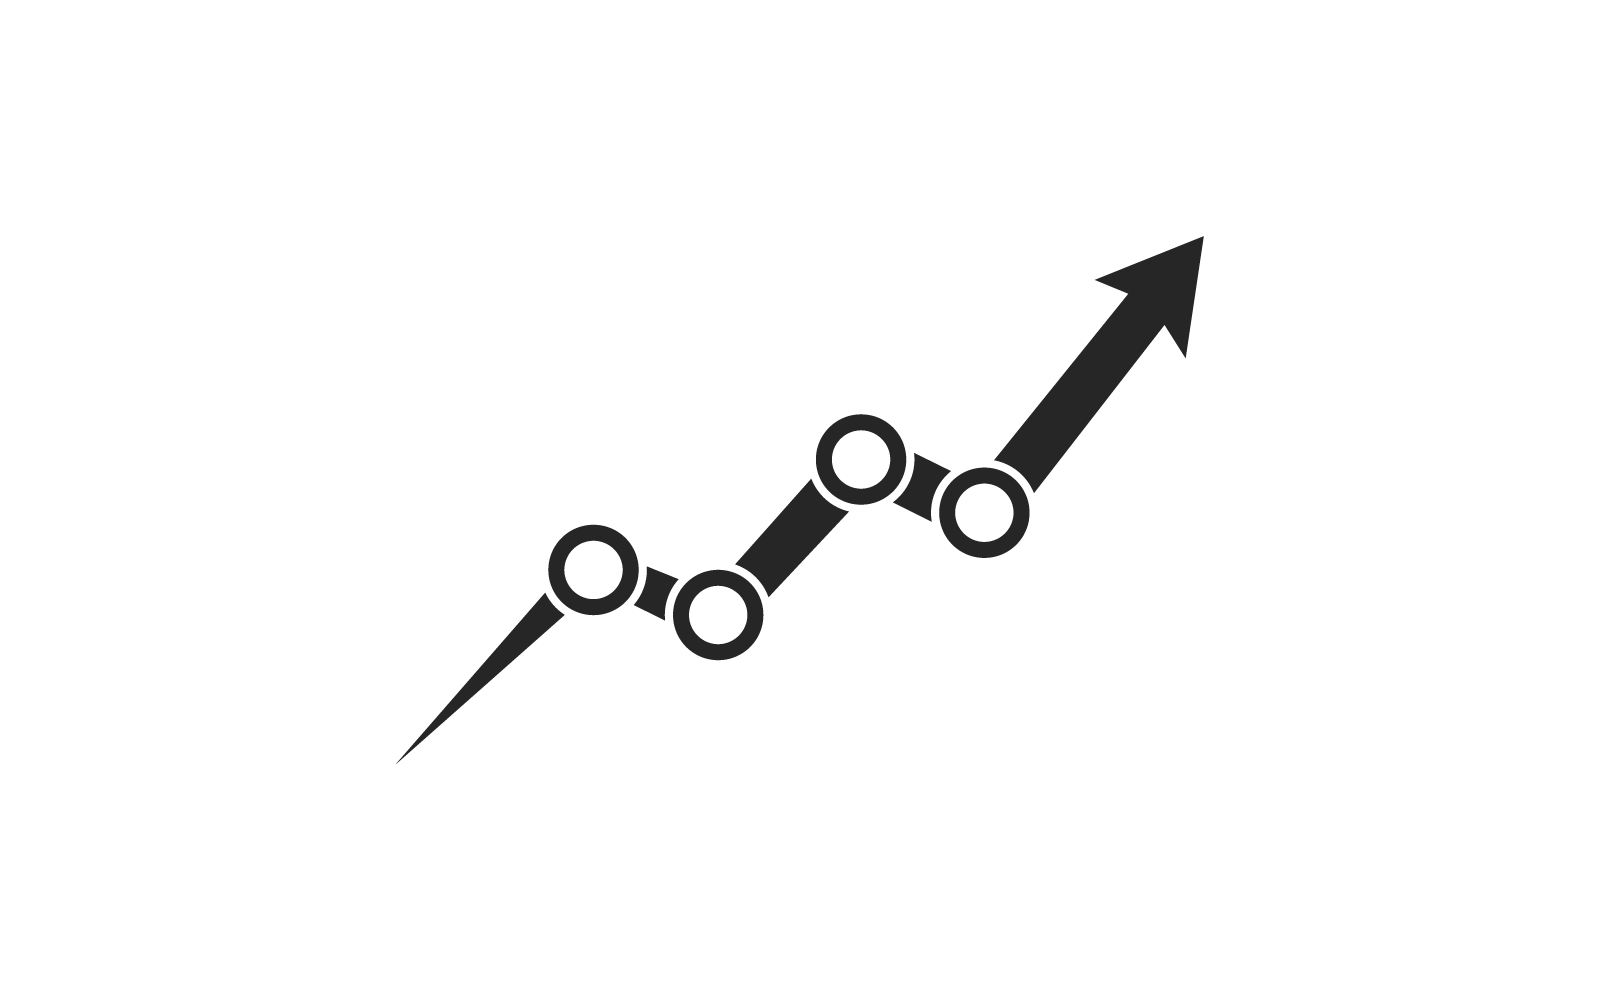 Arrow Business Finance logo vector flat design template